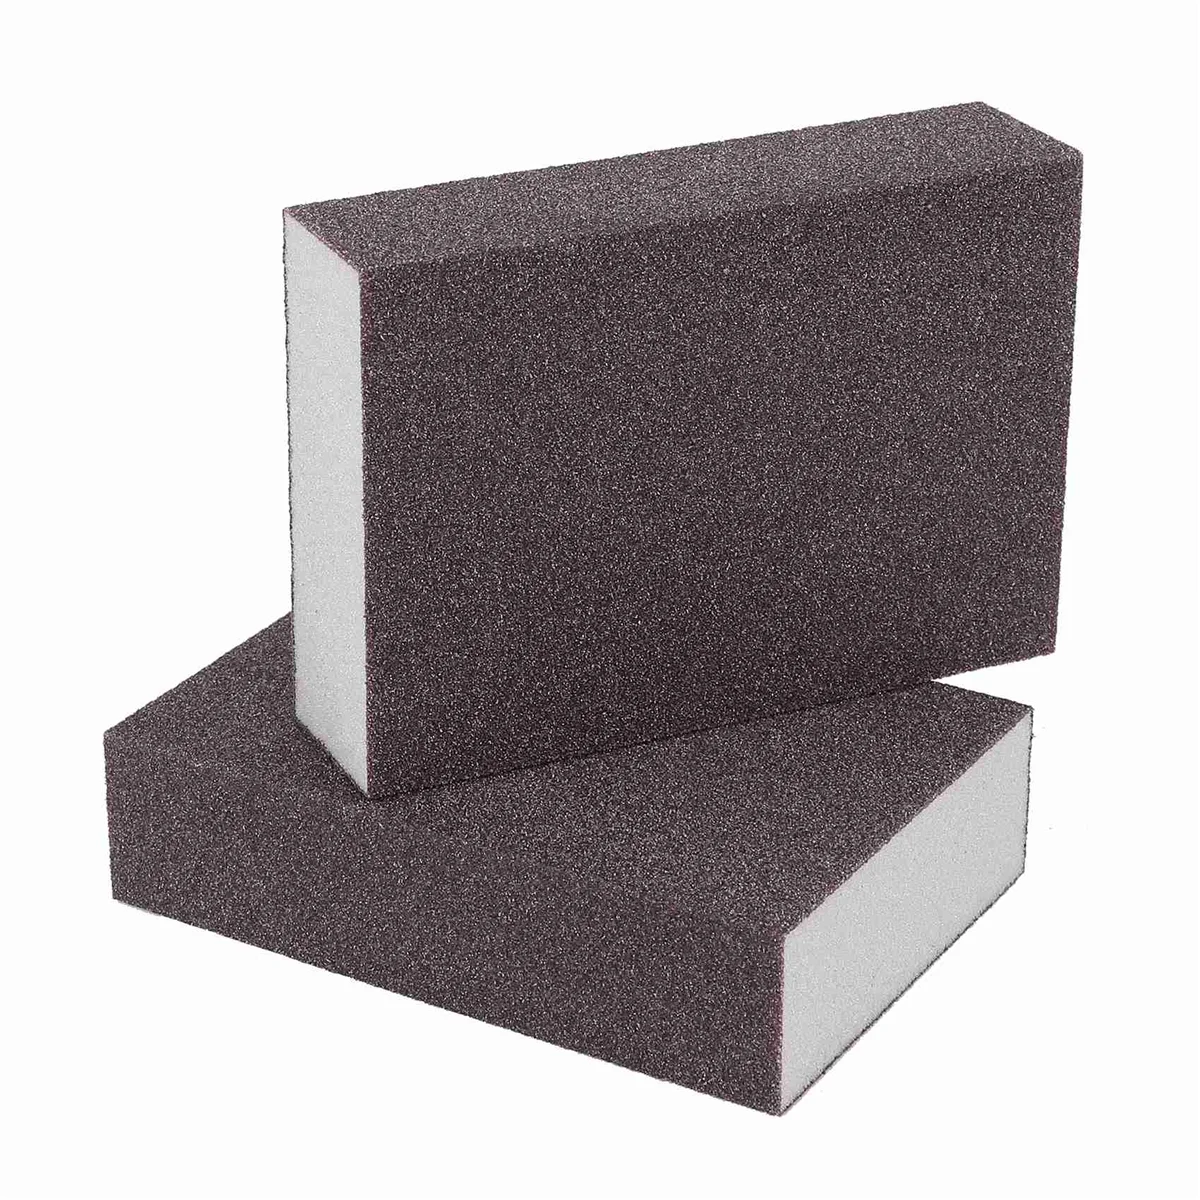 

8 упаковок шлифовальные губки грубые тонкие шлифовальные блоки в 60-220 гранях песчаная пена наждачная бумага для металла деревянной полировки